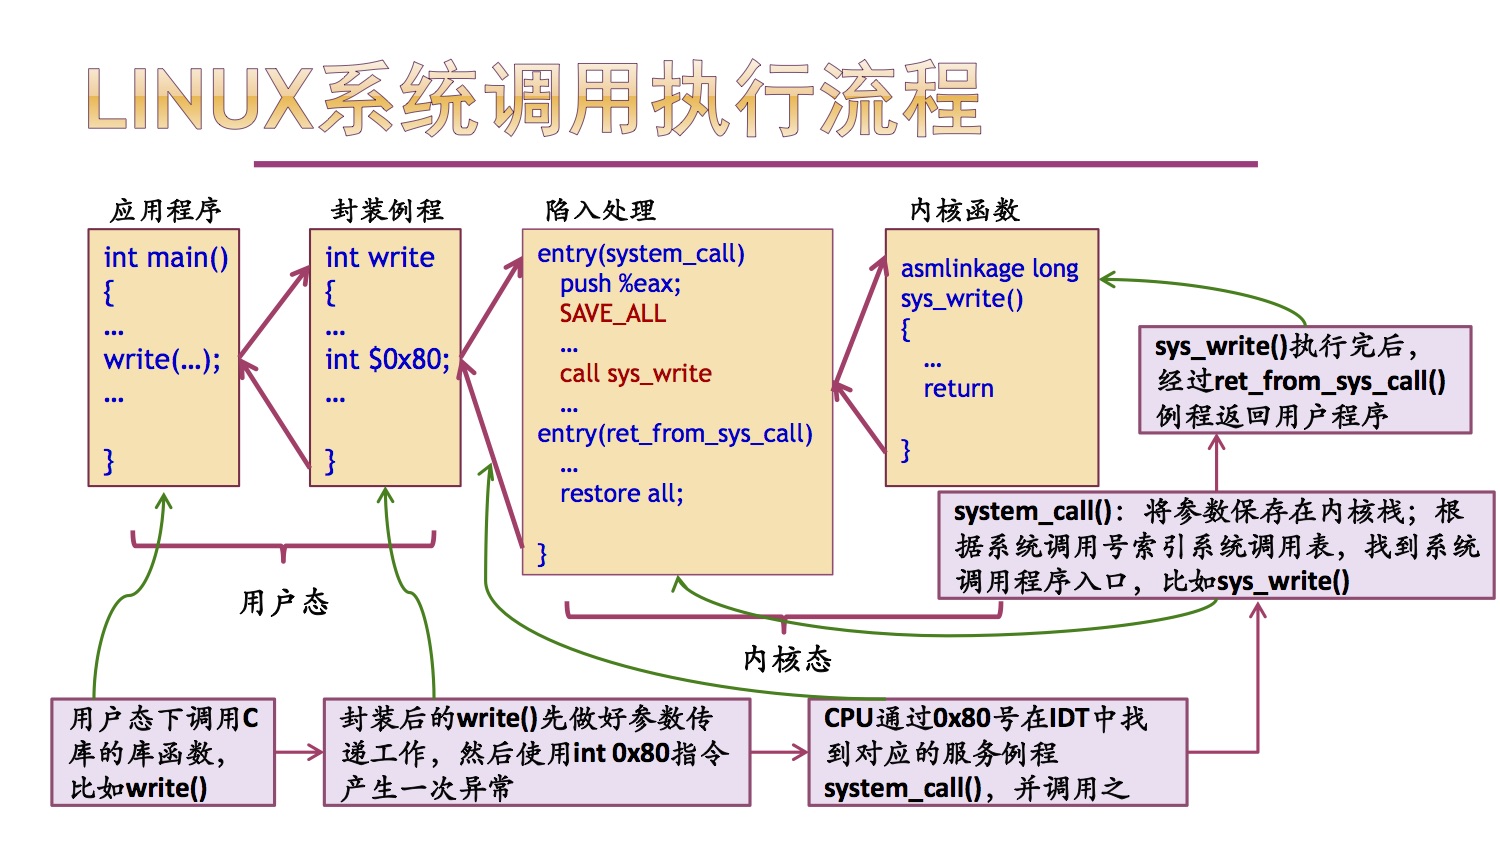 linux设备驱动开发详解 下载_linux设备驱动开发详解 教程下载_linux qt gui开发详解